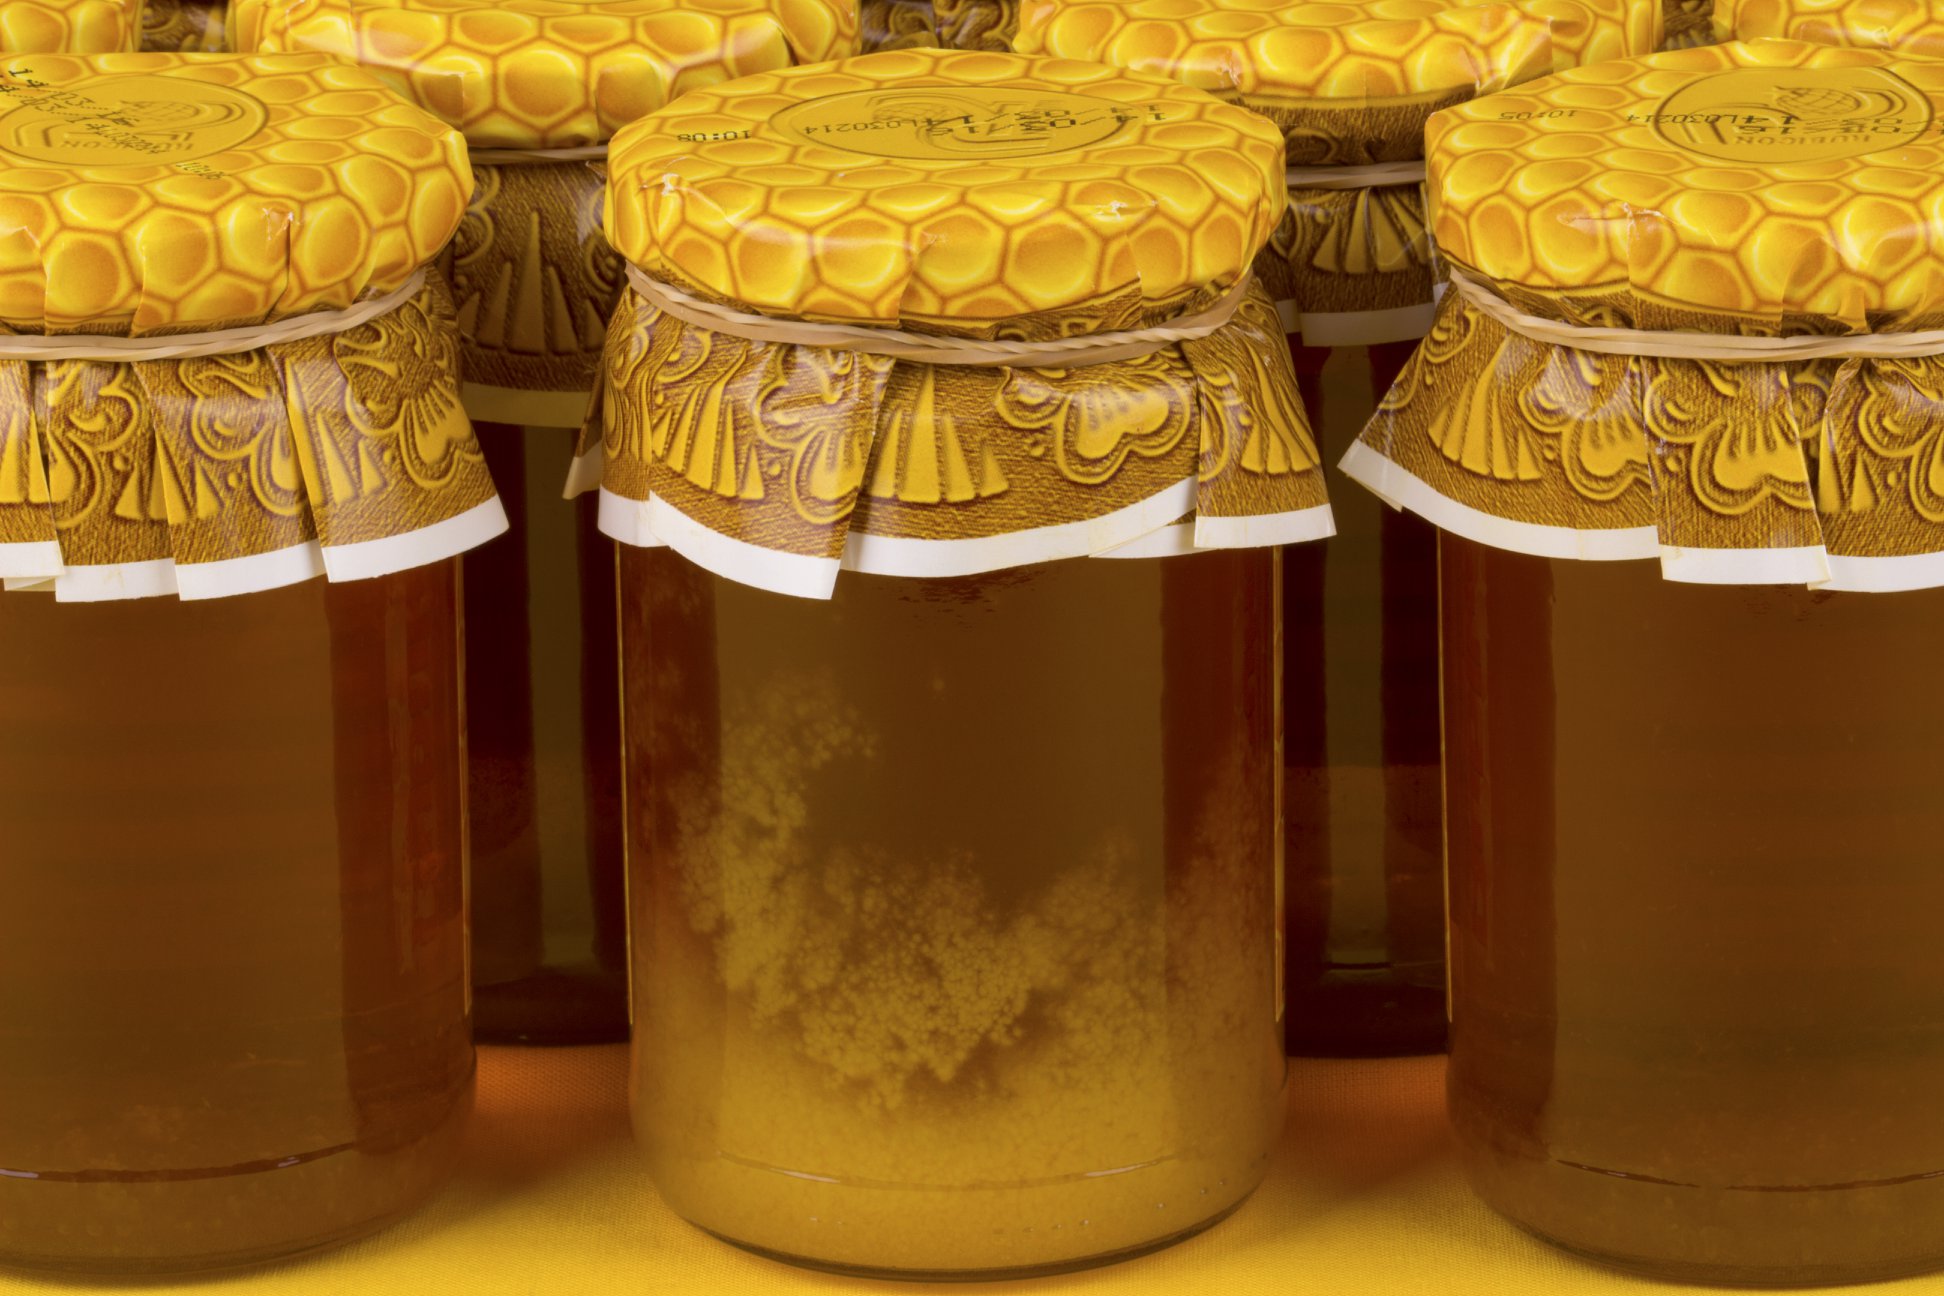 Honig im Glas kristallisiert